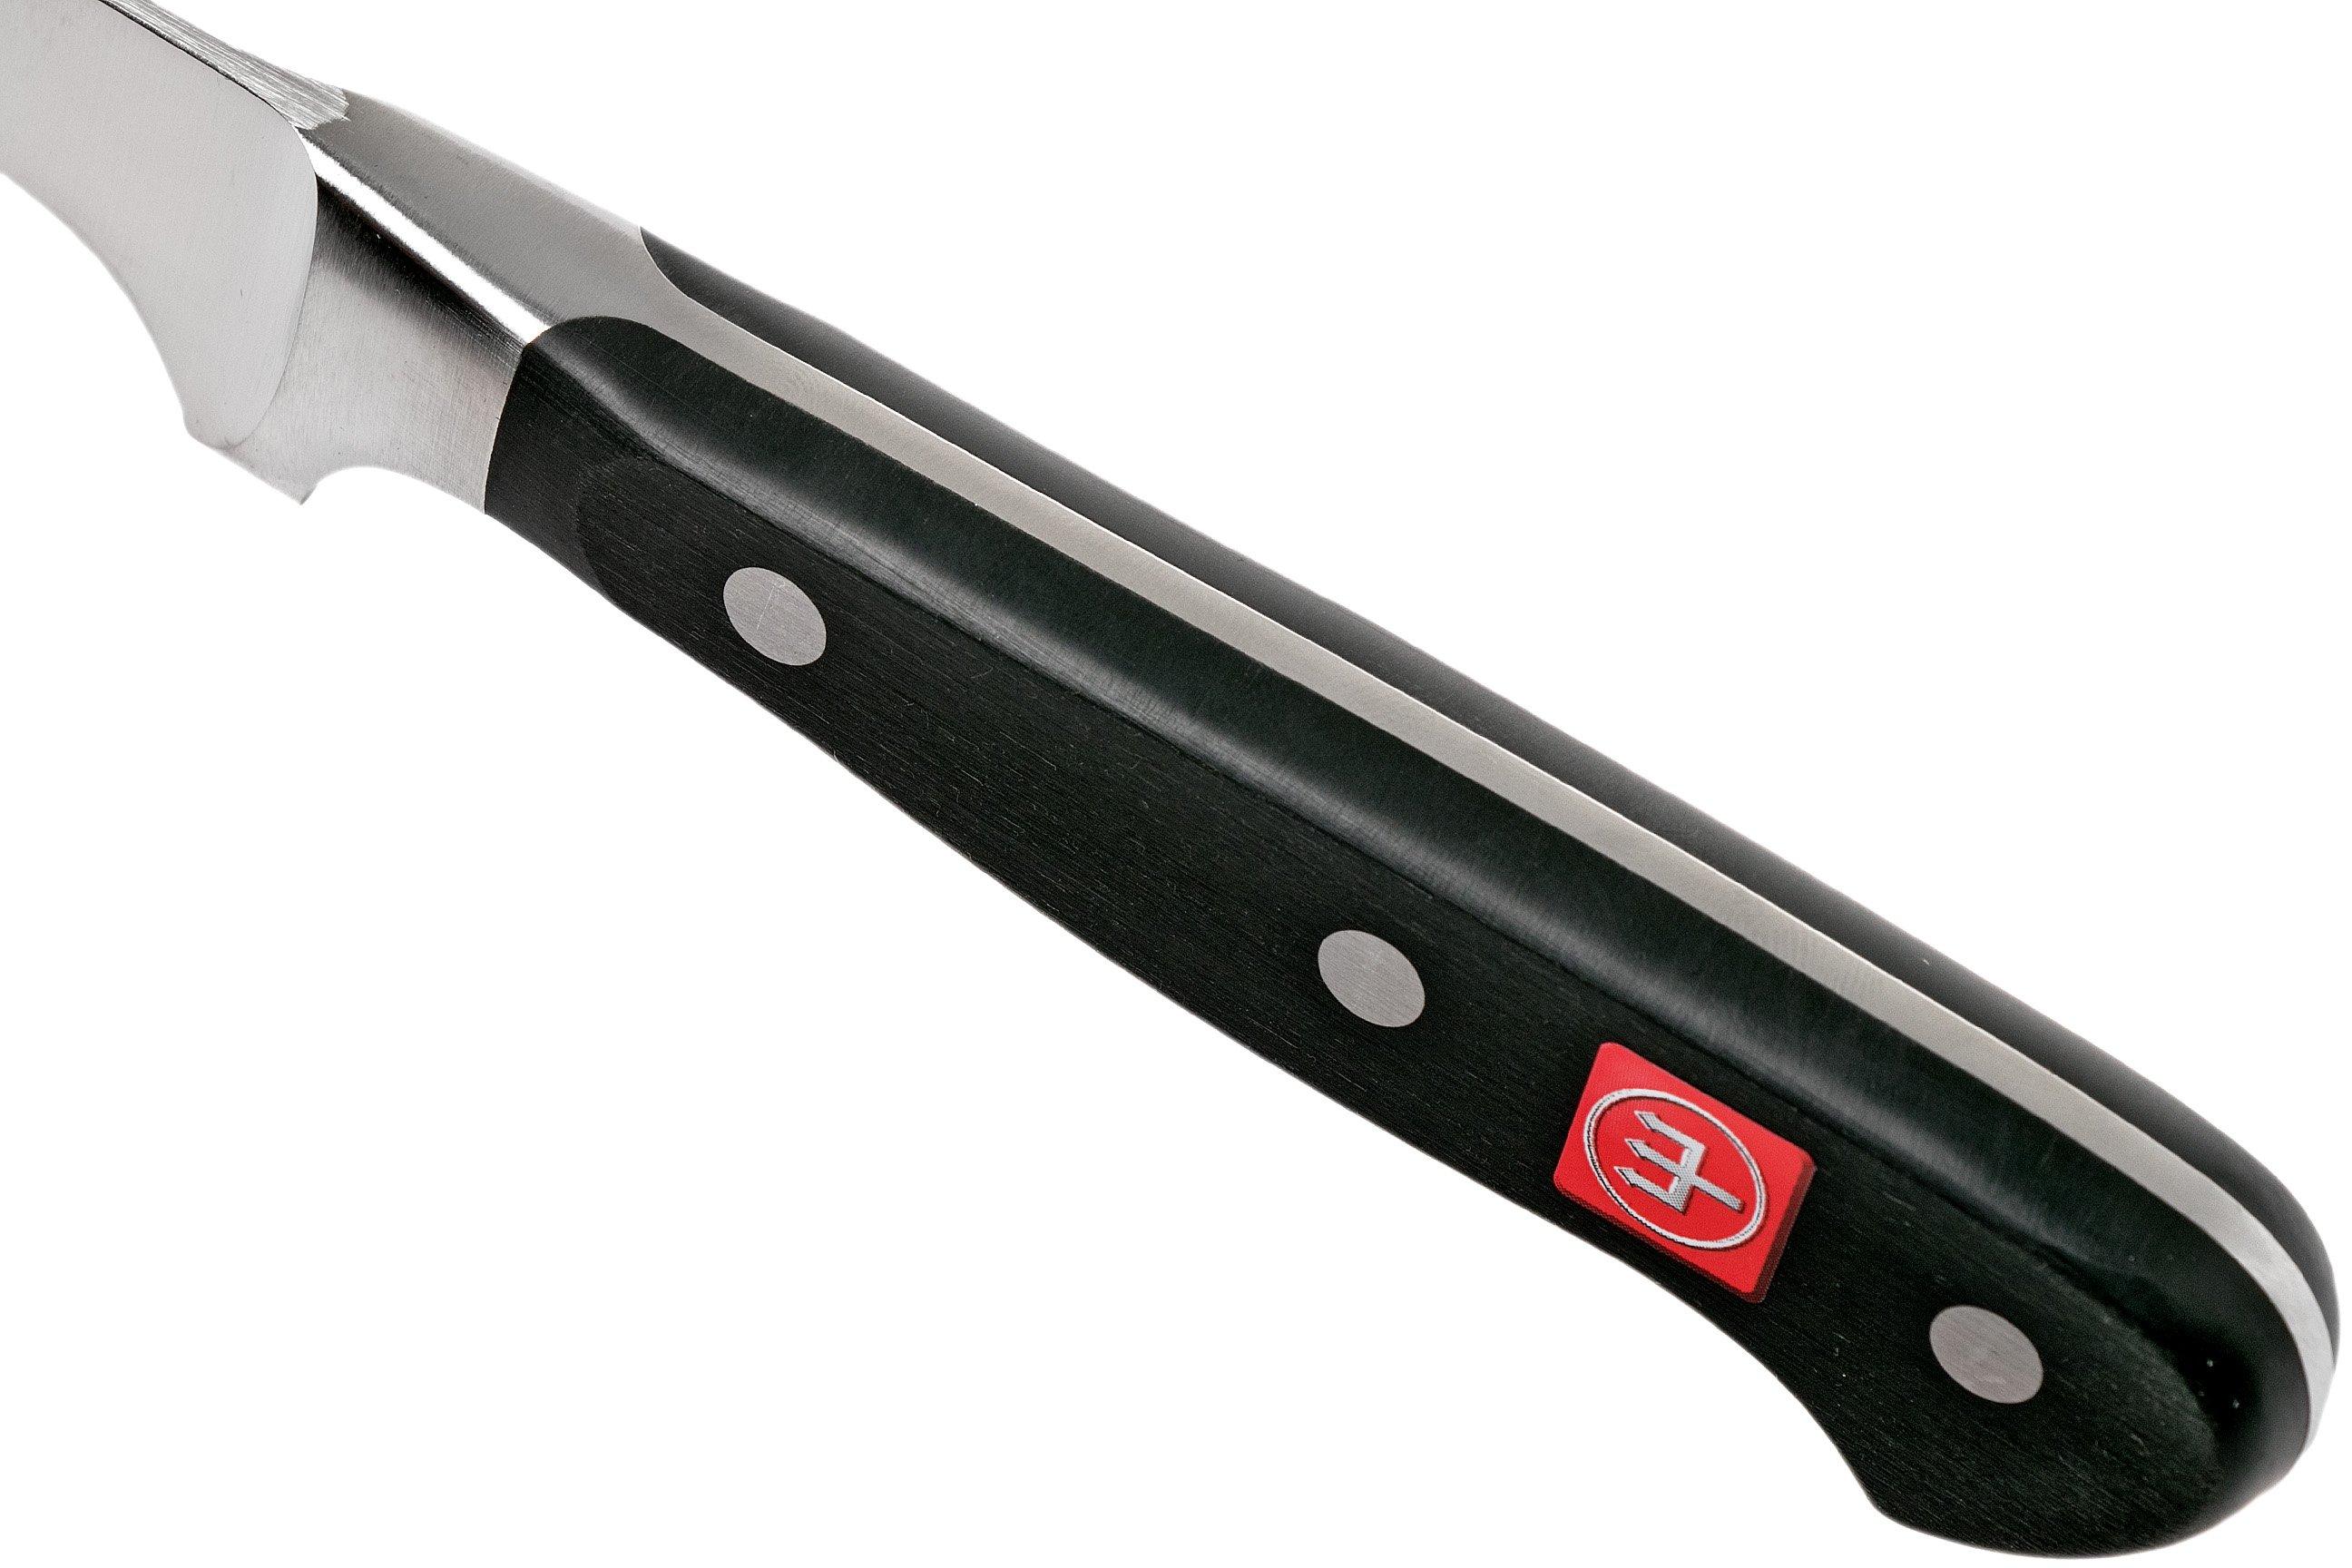 w-sthof-classic-coltello-per-disossare-14-cm-4602-fare-acquisti